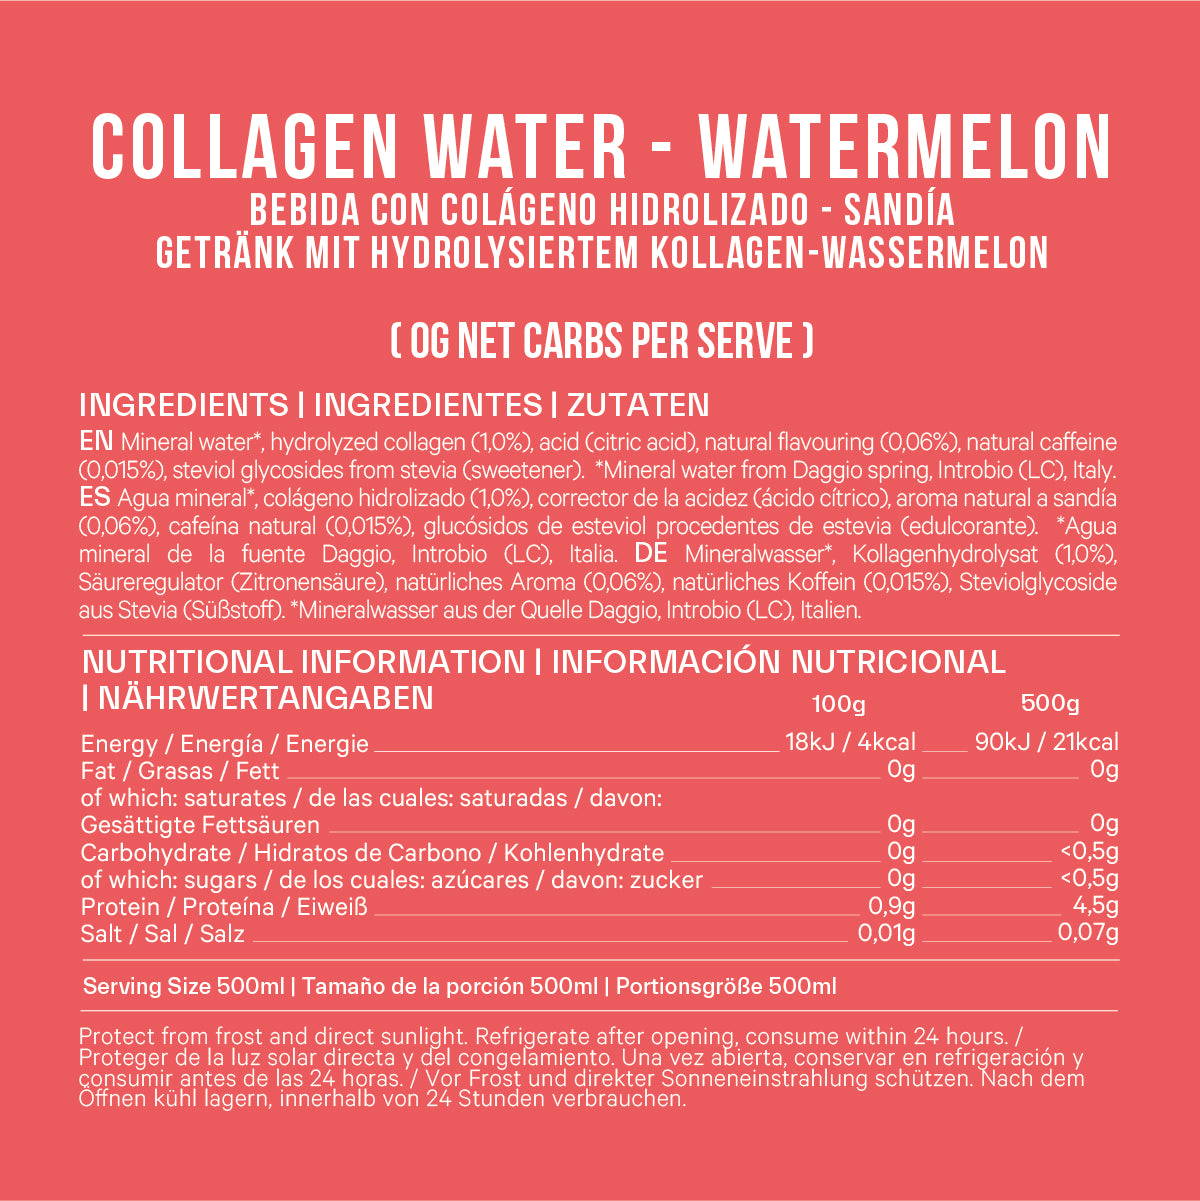 CAFFEINATED COLLAGEN WATER - WATERMELON